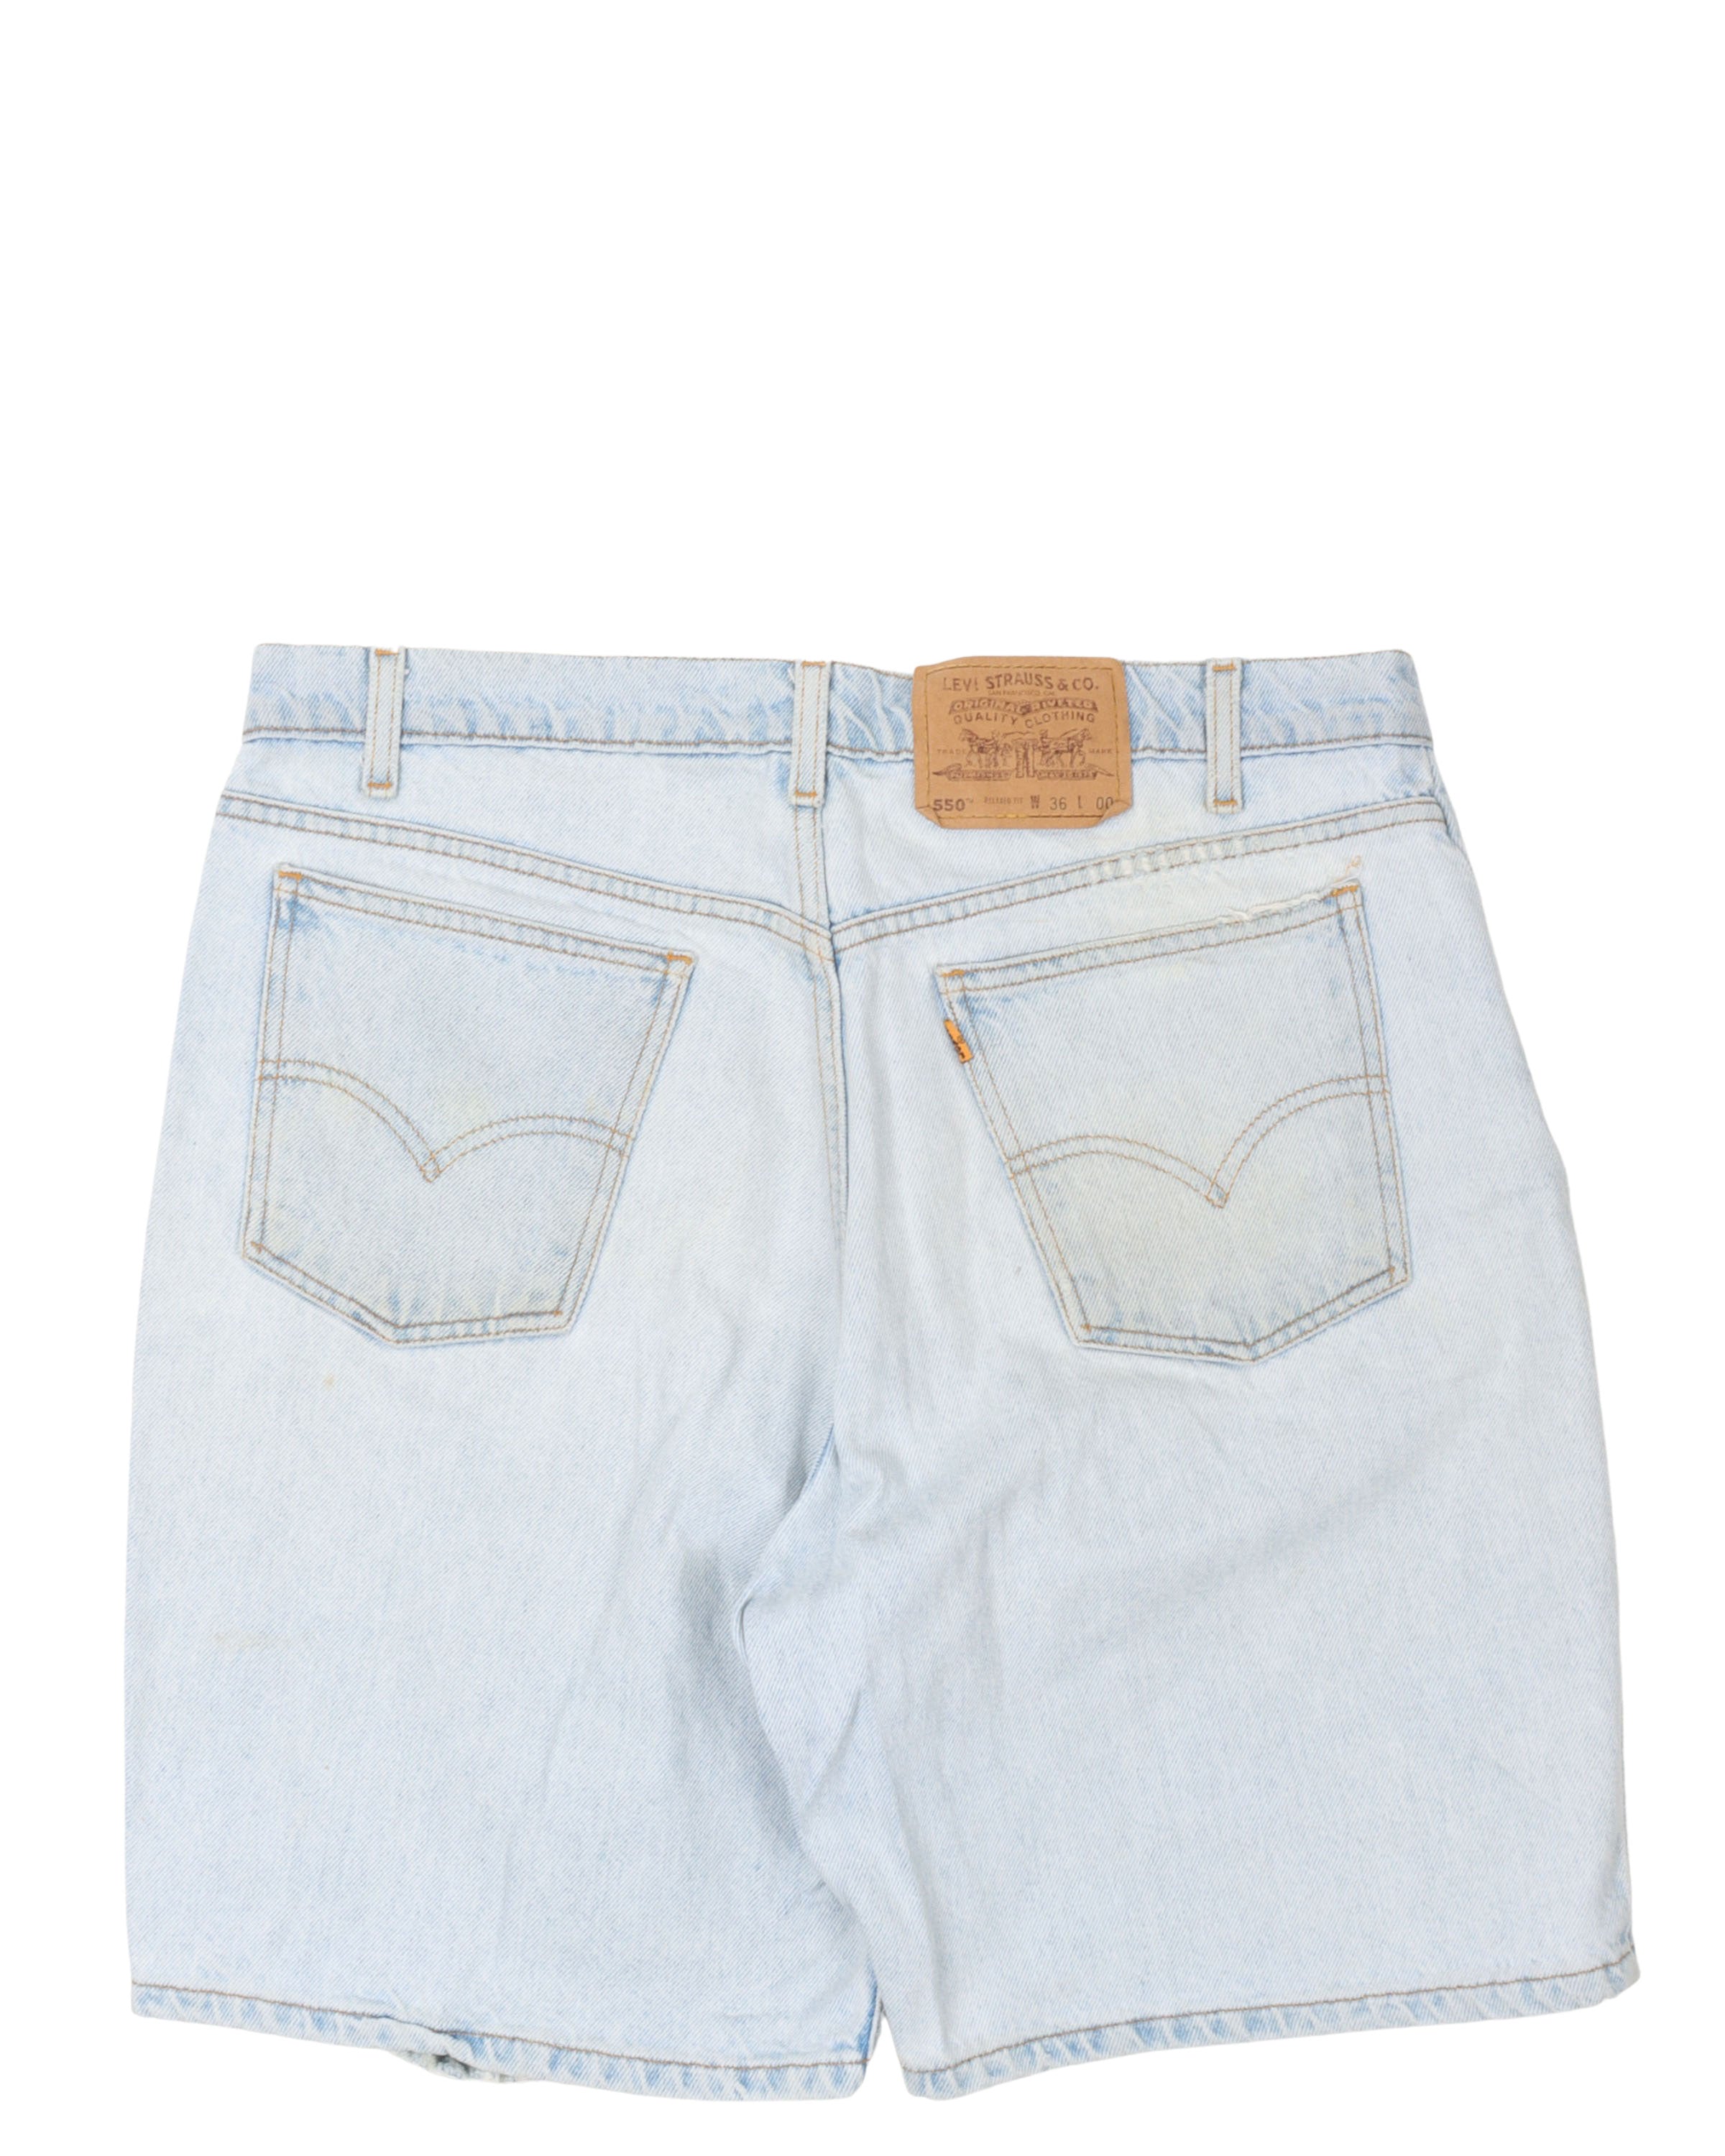 Levi's 550 Denim Shorts